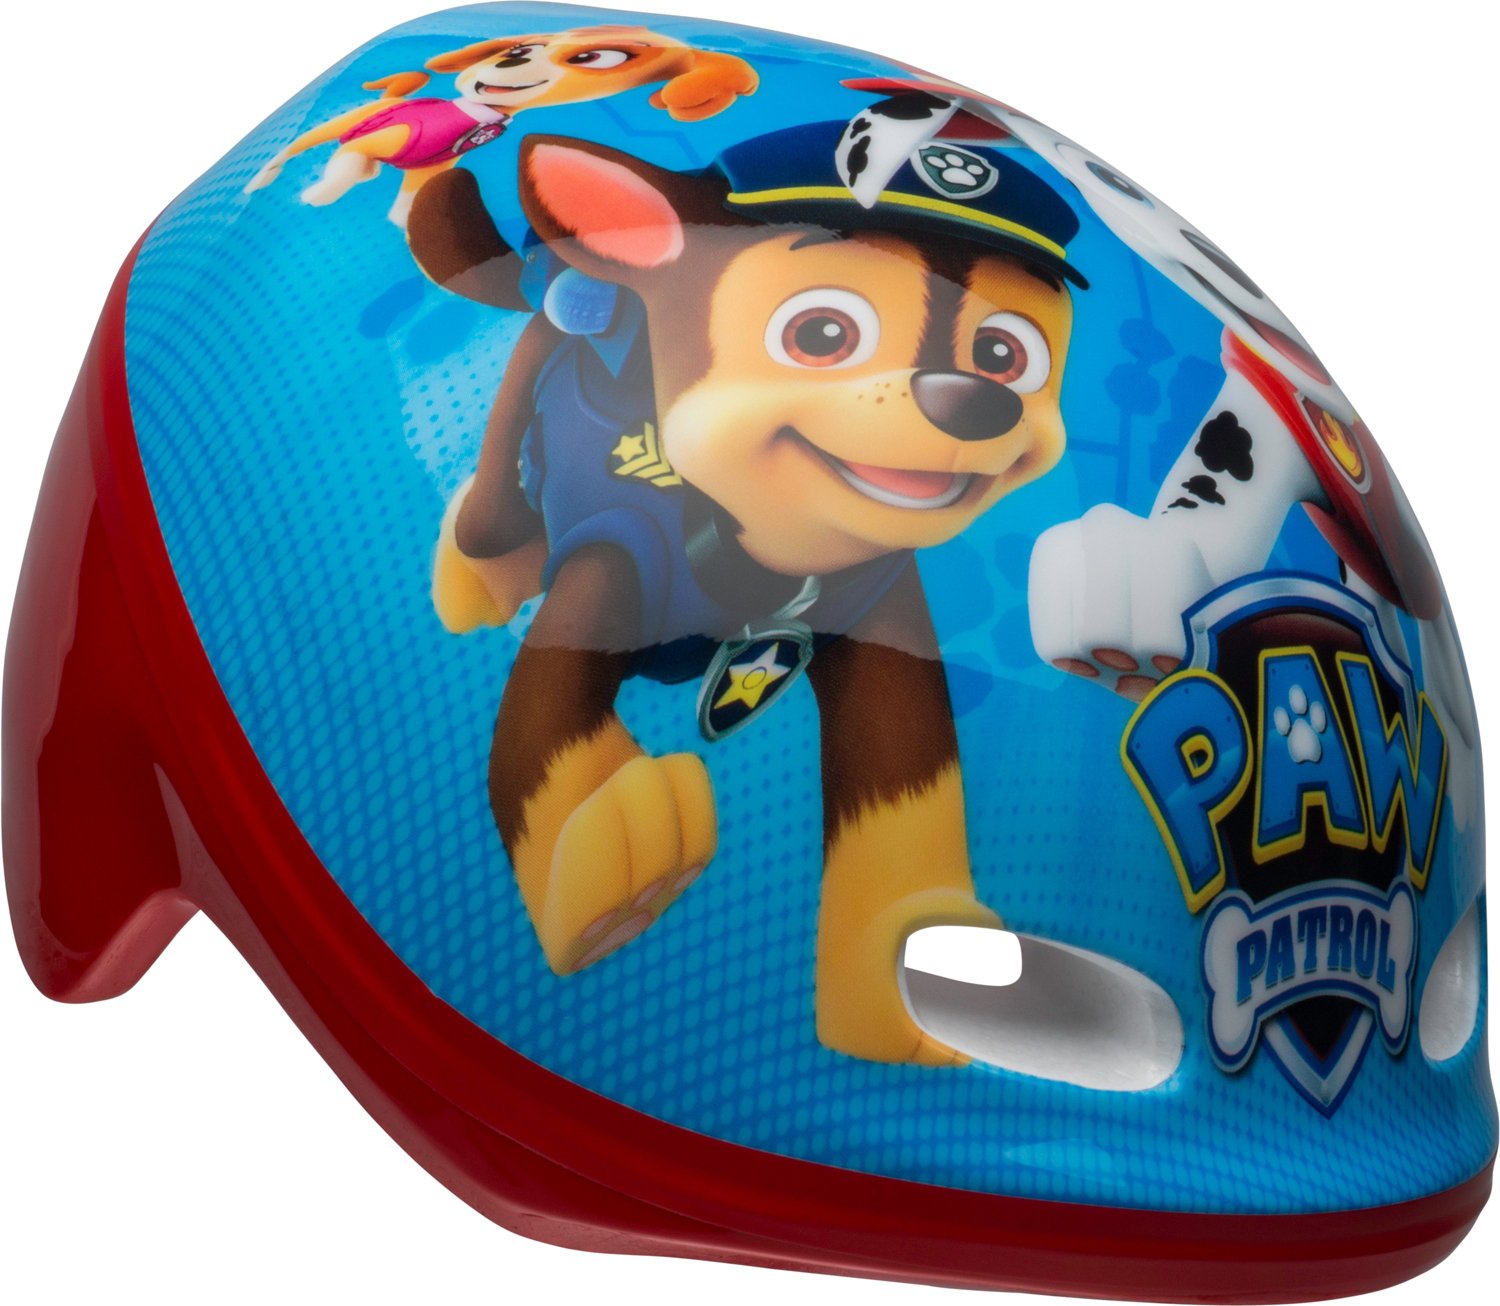 Bell Paw Patrol Toddlers' Bike Helmet